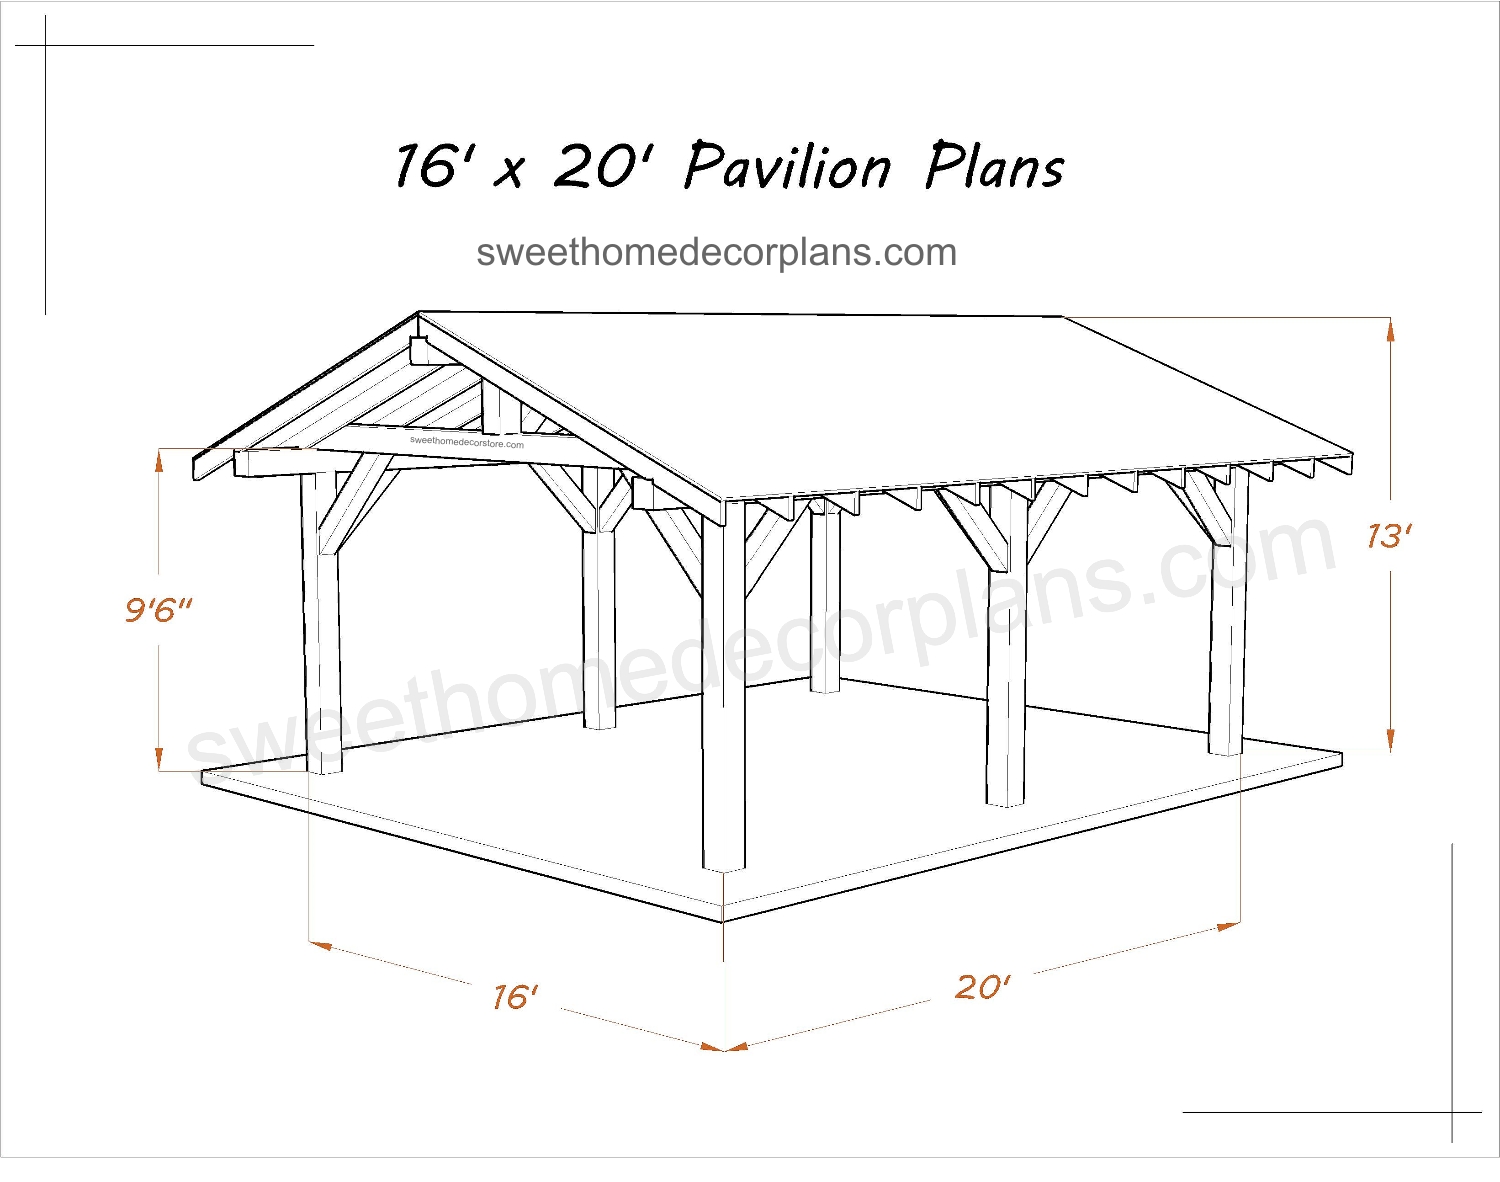 Wooden-16-x-20-gable-pavilion-plans-in-pdf